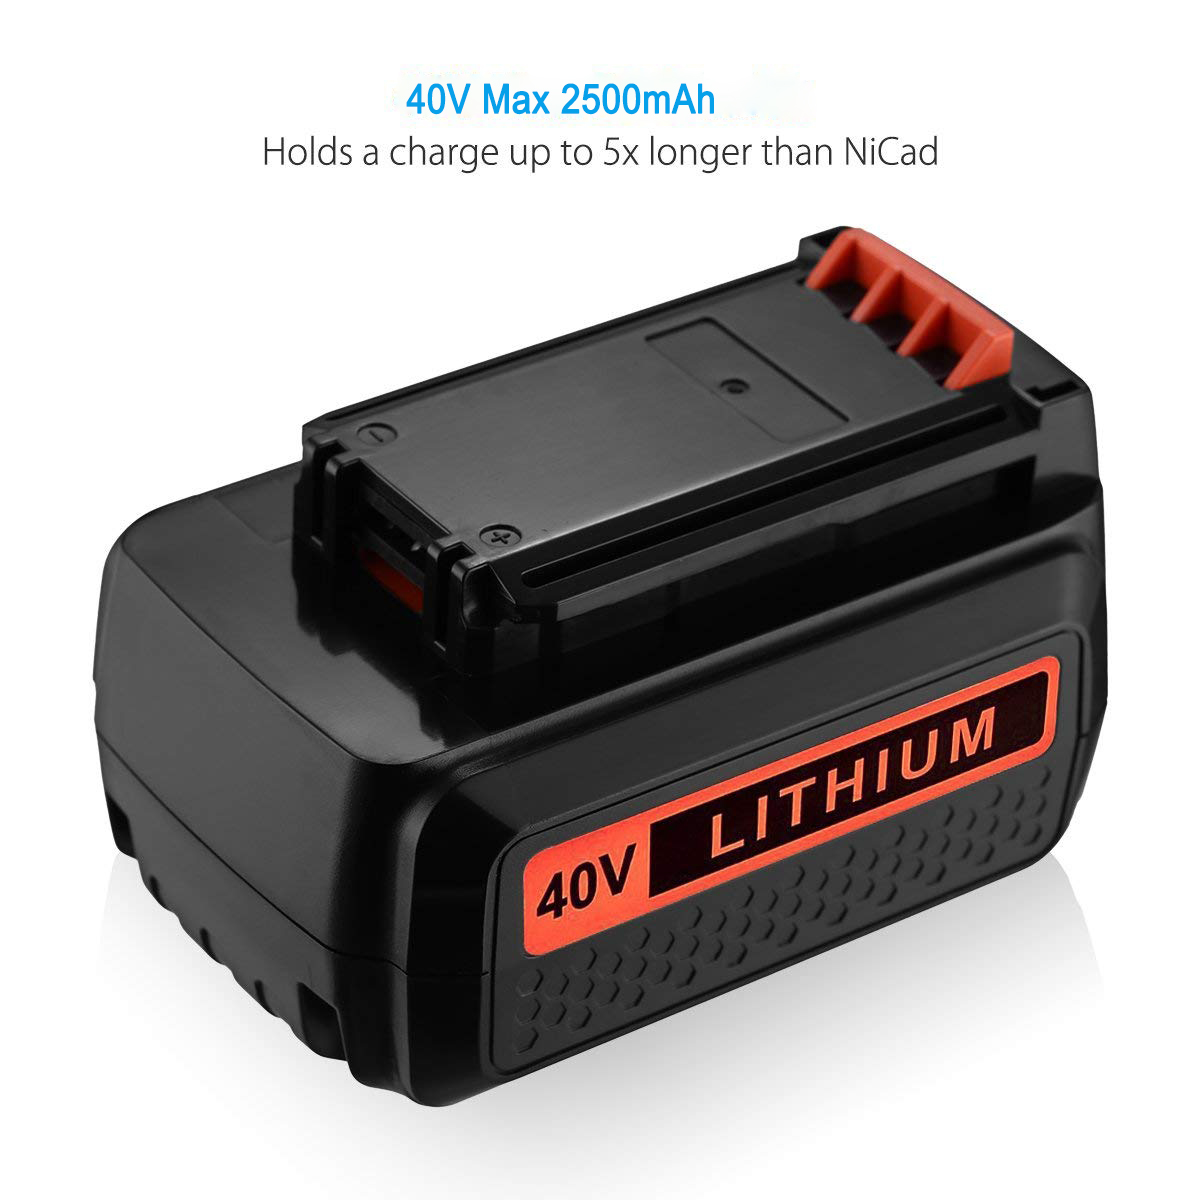 40V Max* Battery, 2.0-Ah